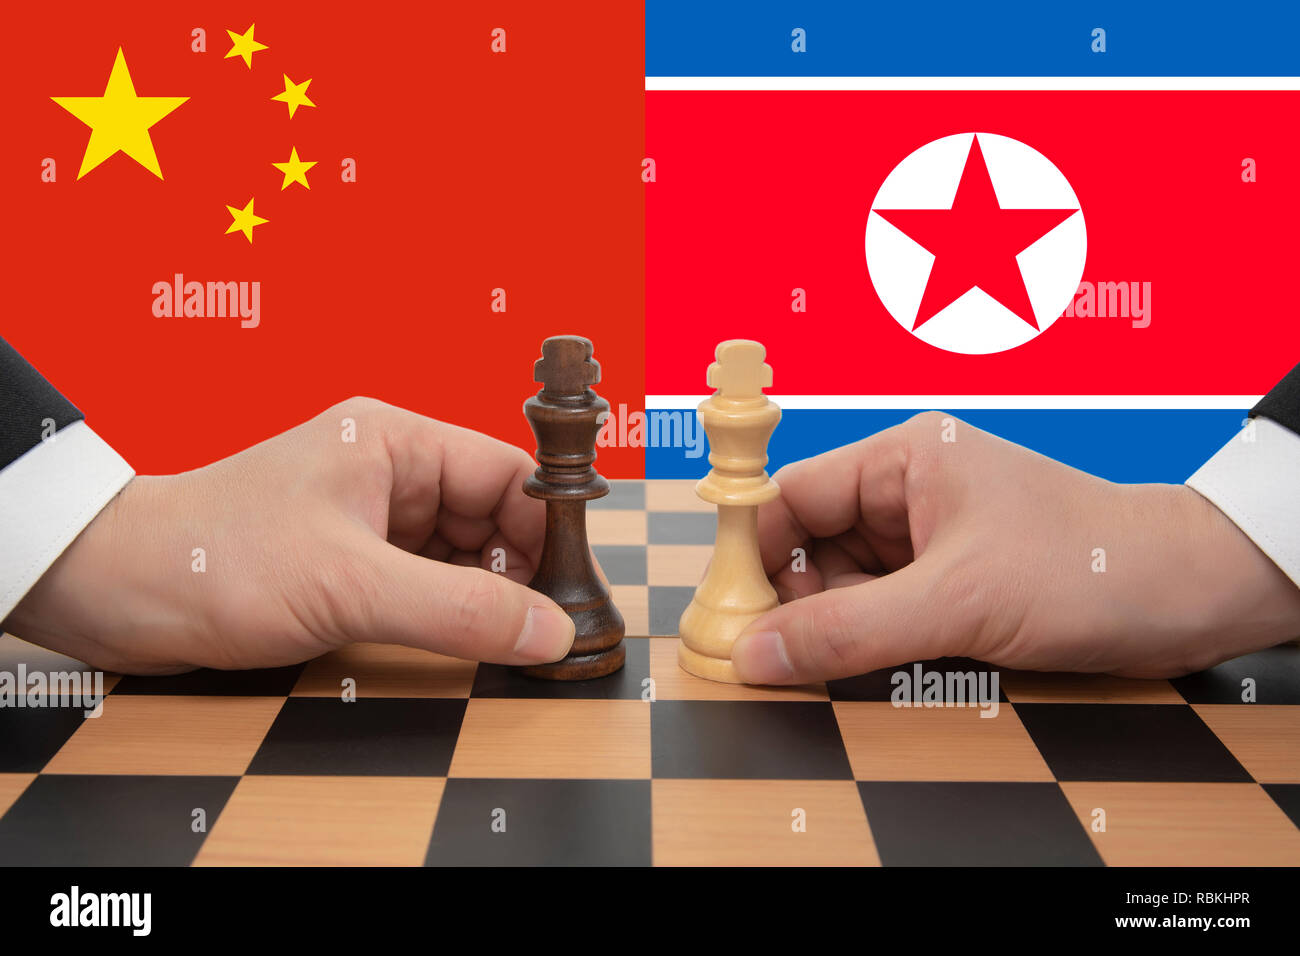 Sommet entre la Chine et la Corée a exprimé dans un jeu d'échecs. Banque D'Images